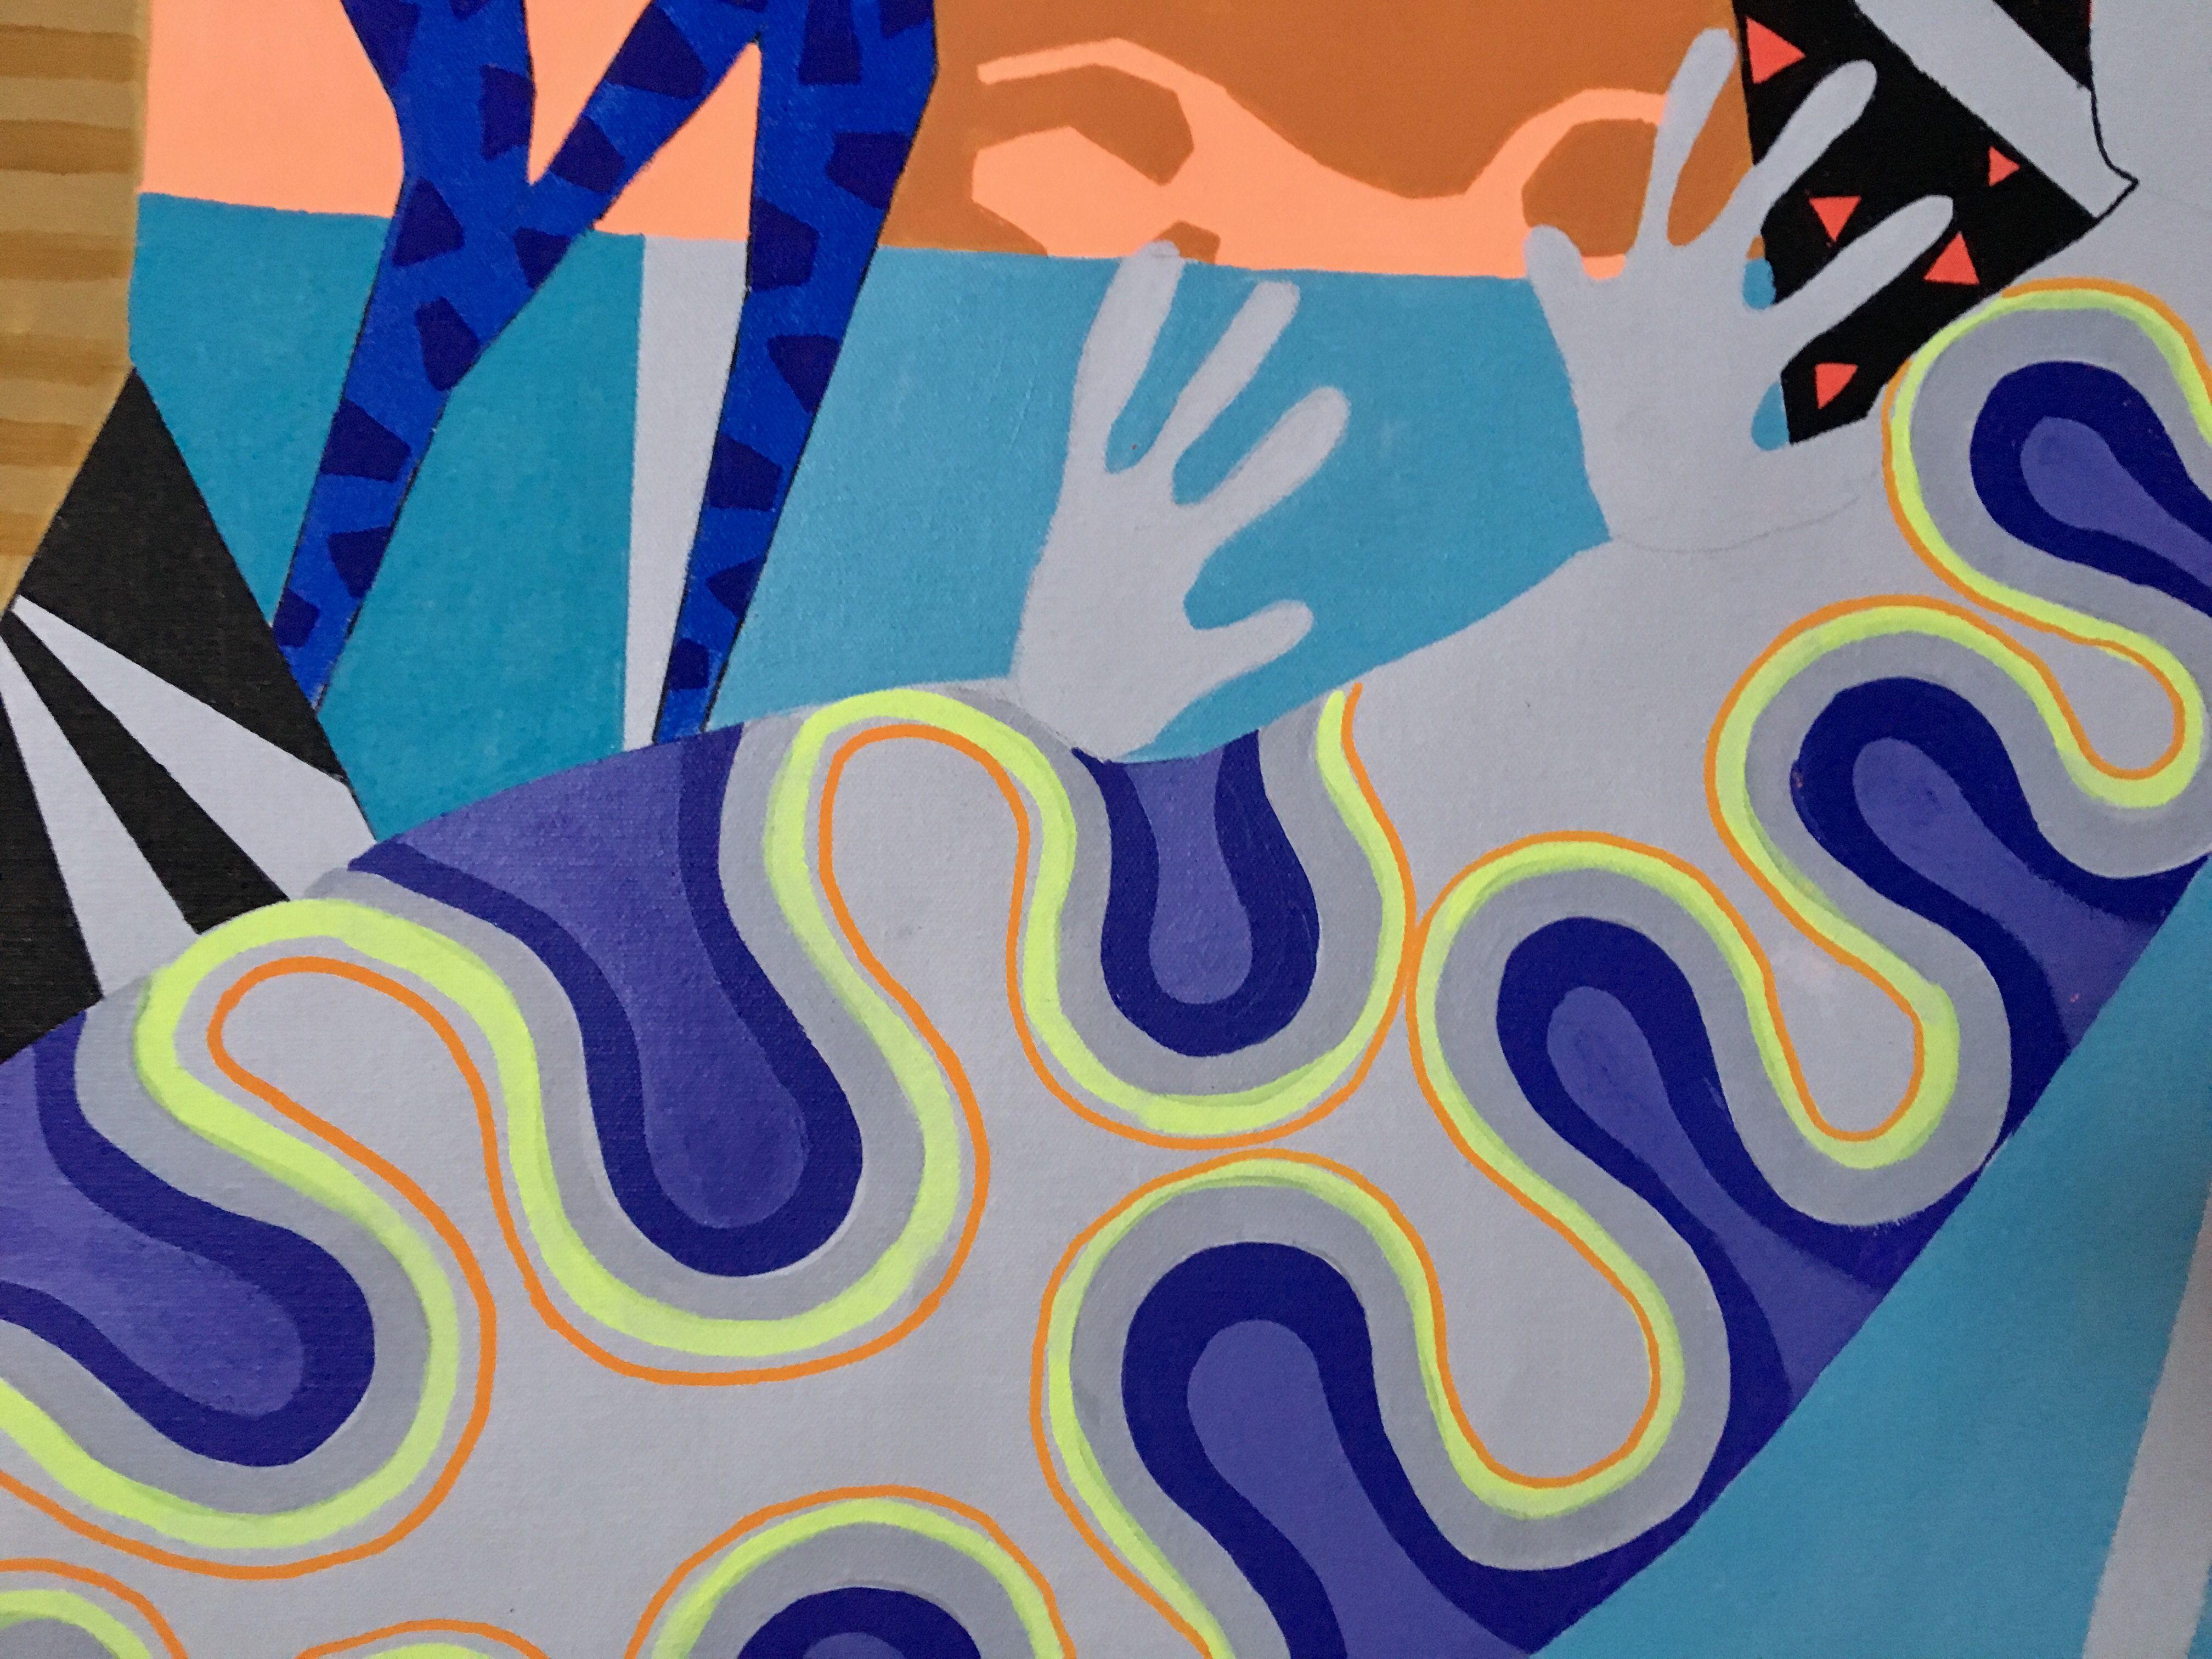 acrylgemälde auf der Leinwand, inspiriert von afrikanischen, mexikanischen und zeitgenössischen Kunstrichtungen in Blau- und Rottönen. CANVAS 174 drückt afrikanisch anmutende Figuren auf einem Hintergrund aus, der stark von Matisse's Collagen